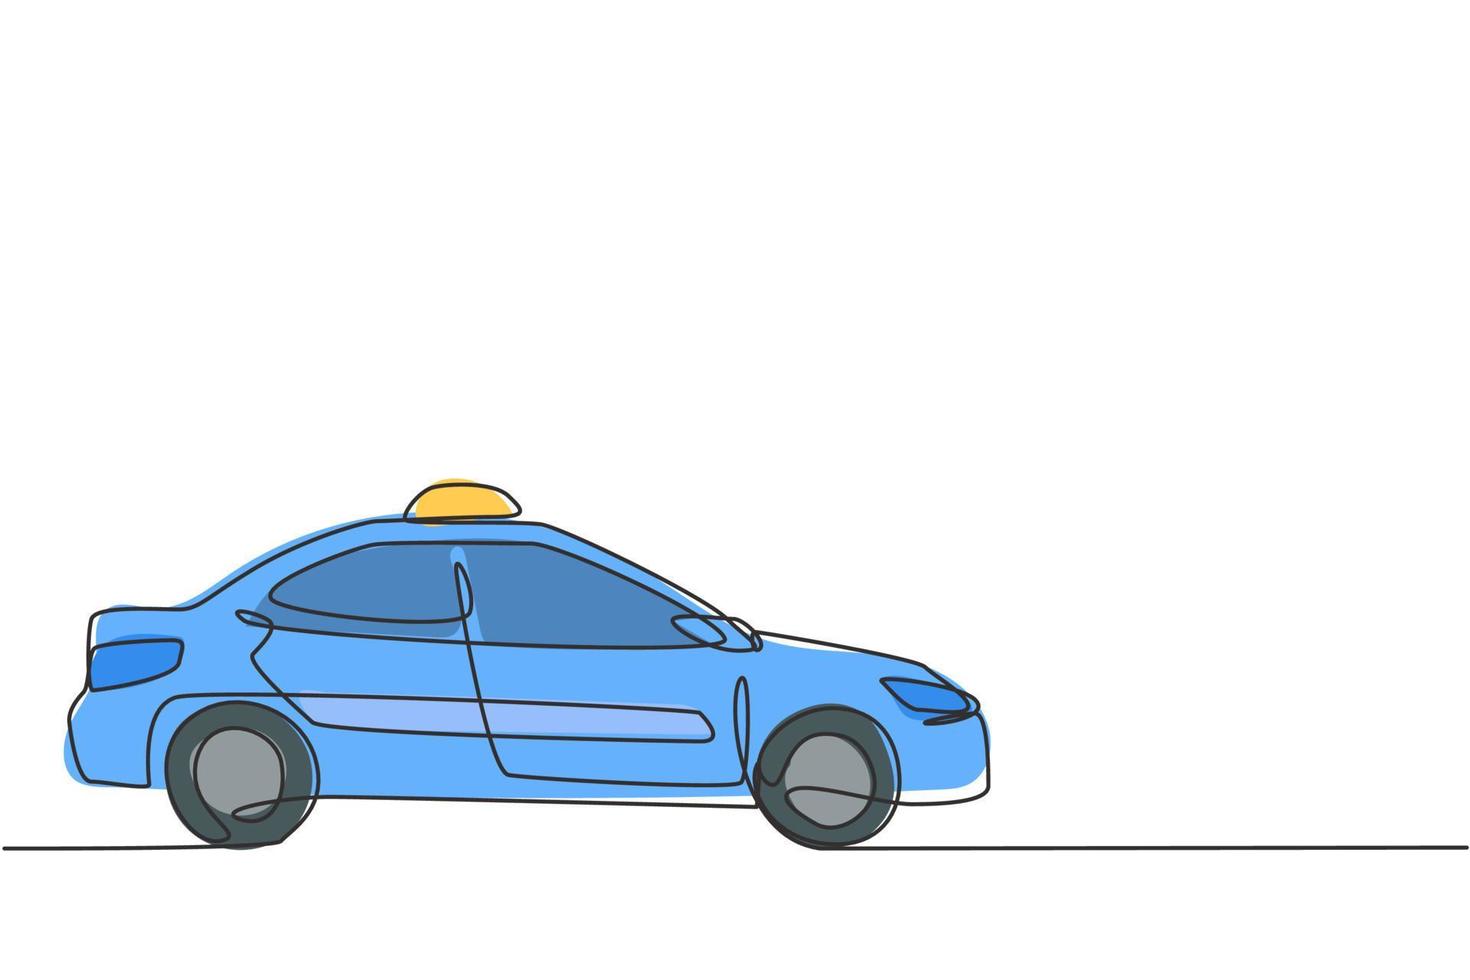 El dibujo de una sola línea del automóvil de taxi moderno más nuevo utiliza un medidor, gps y se puede pedir en línea. avances tecnológicos en el transporte. Ilustración de vector gráfico de diseño de dibujo de línea continua.